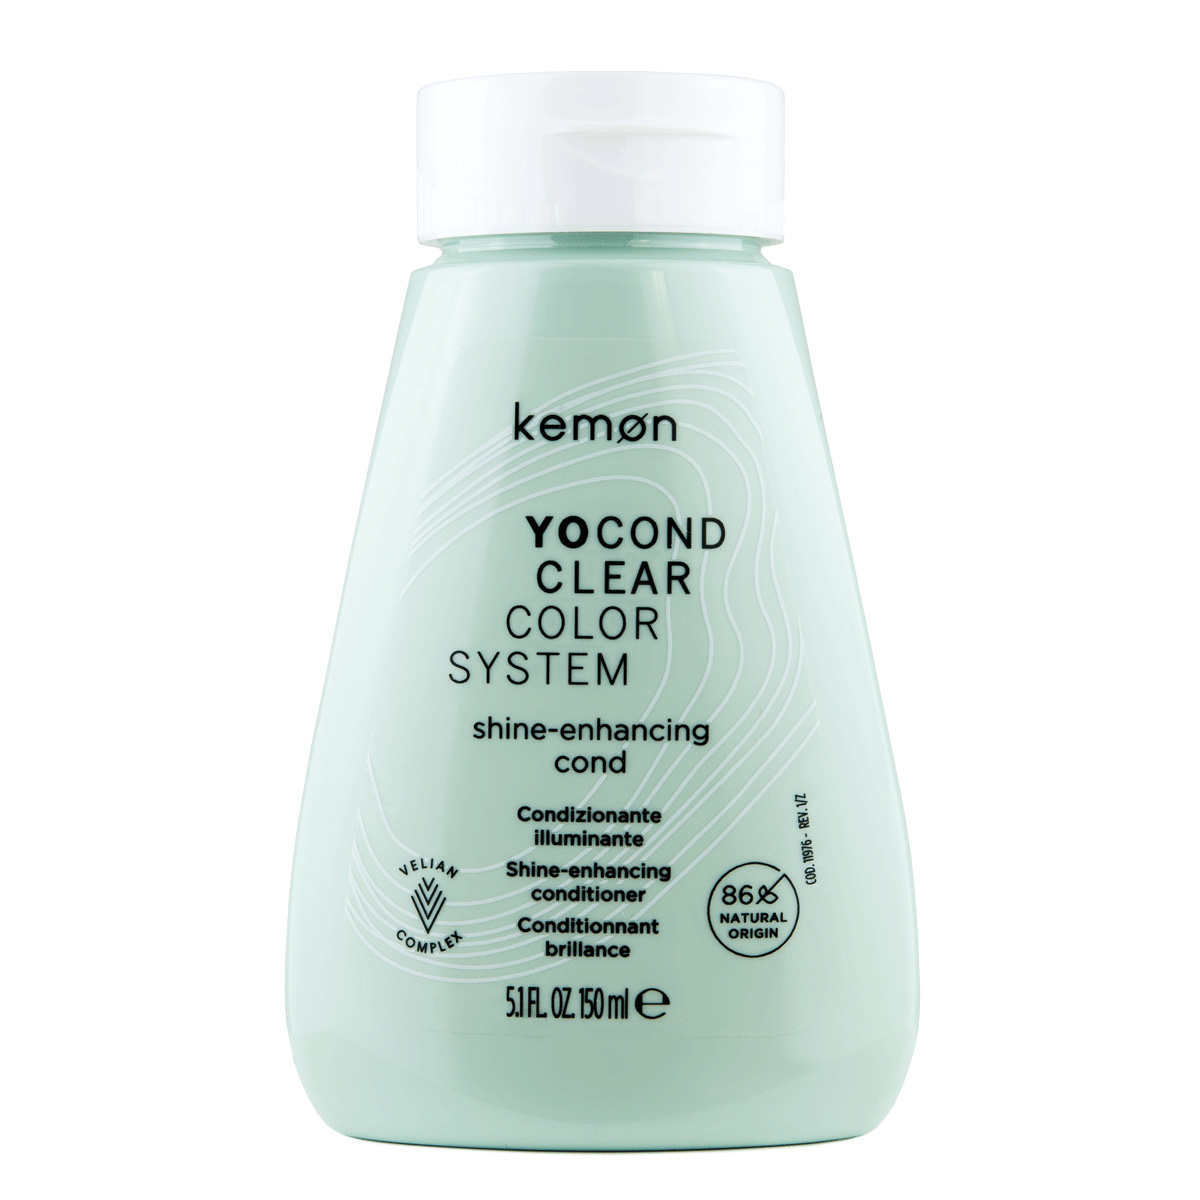 Kemon Yo Cond, odżywka do włosów bez pigmentu, Clear, opakowanie zastępcze, 150ml